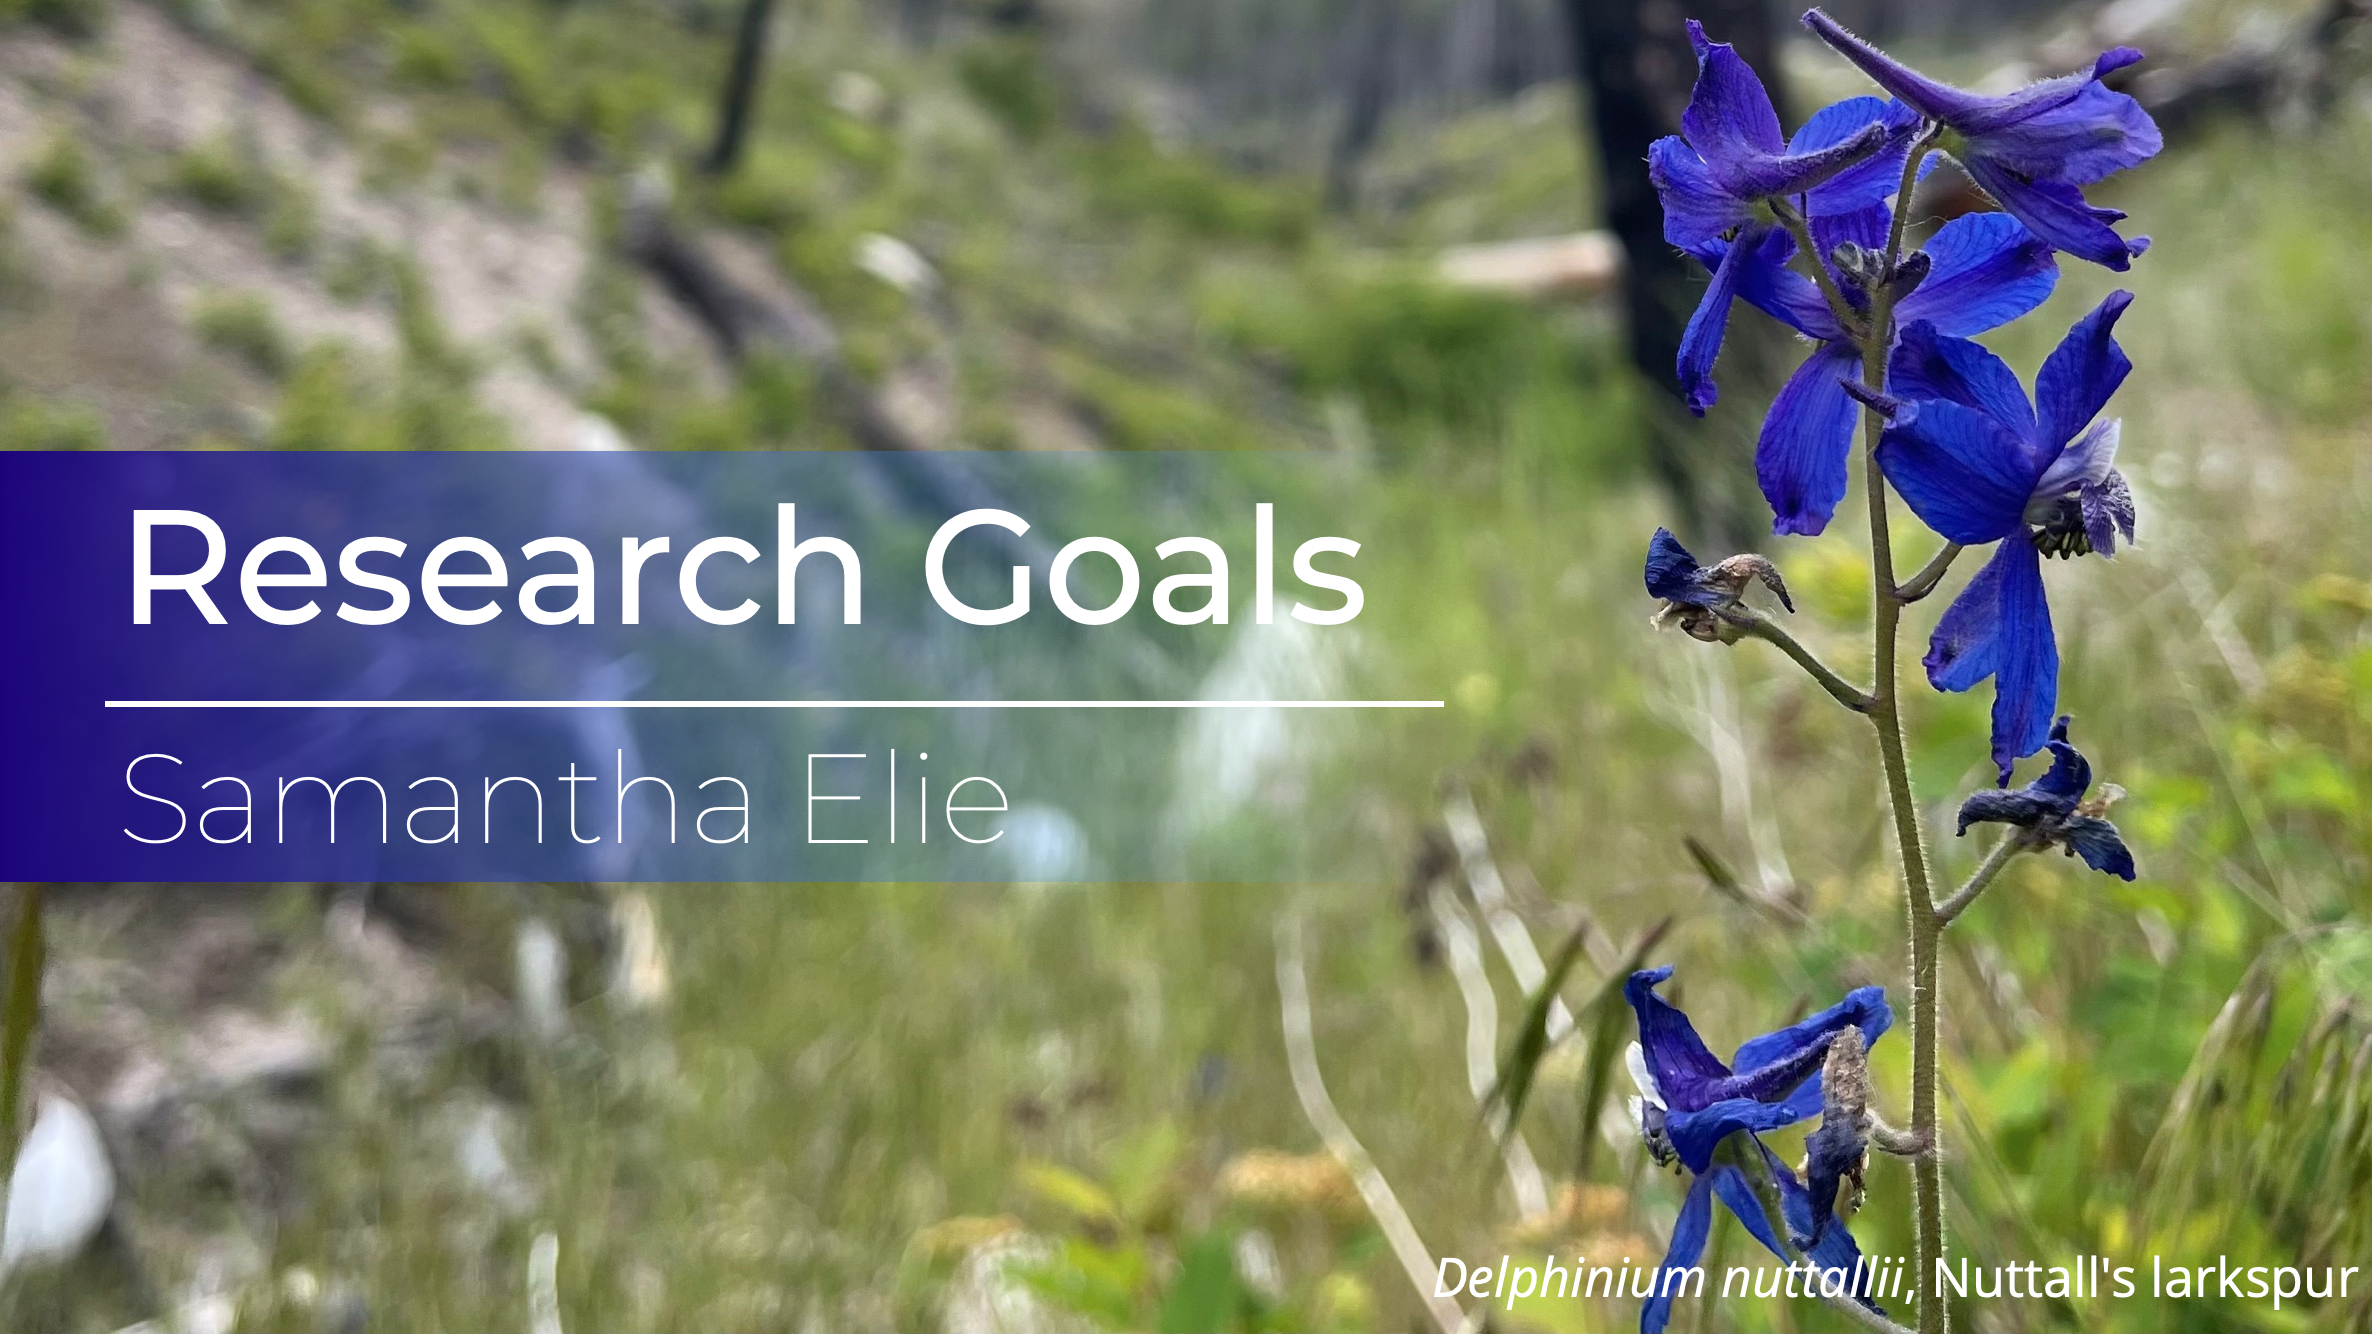 Research goals banner